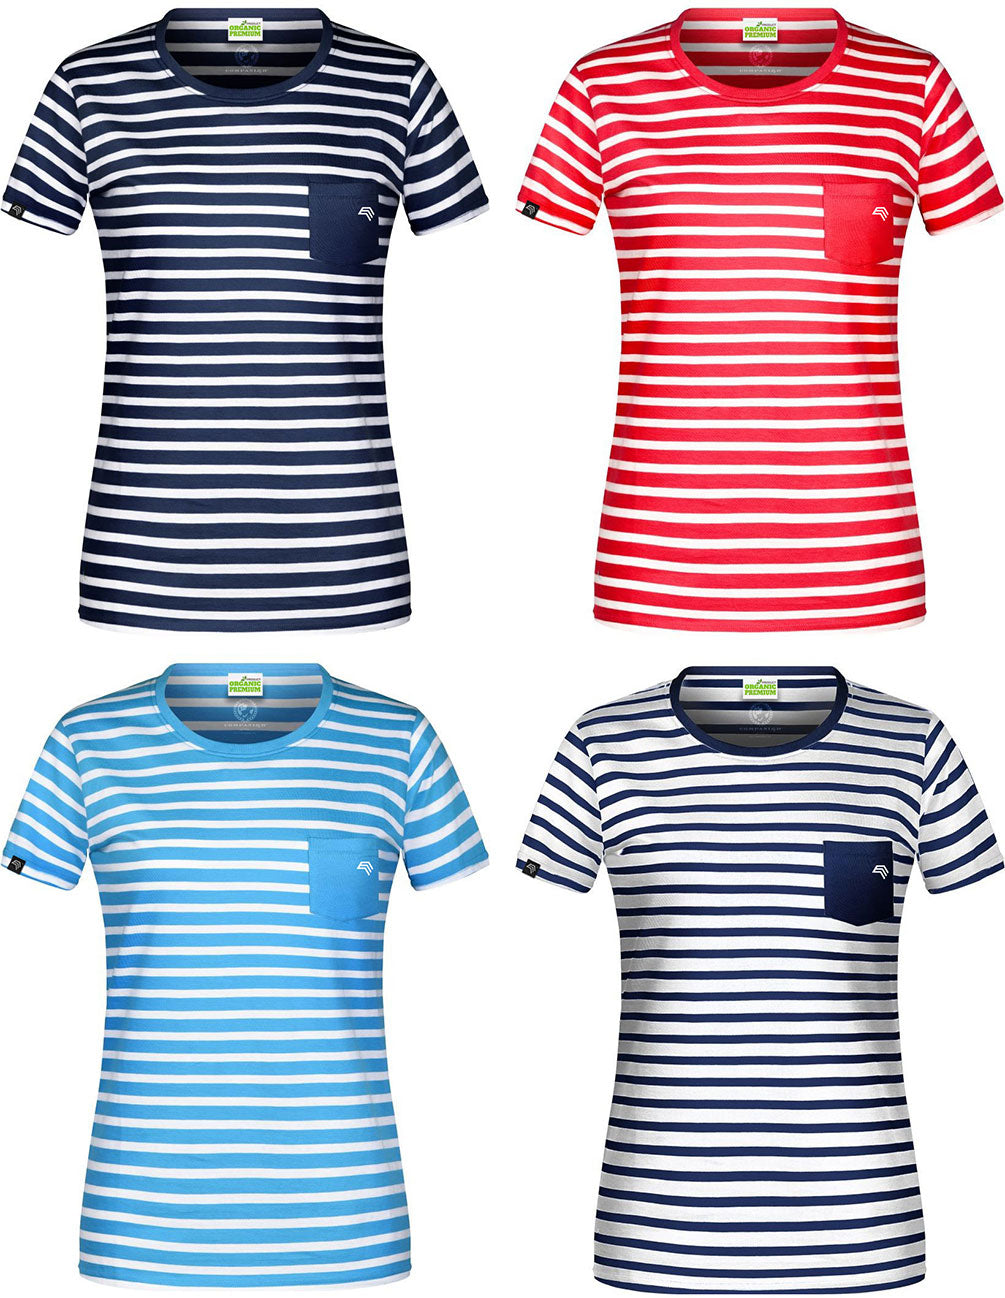 JAN 8027 ― Damen Bio-Baumwolle Streifen T-Shirt gestreift - Weiß / Navy Blau